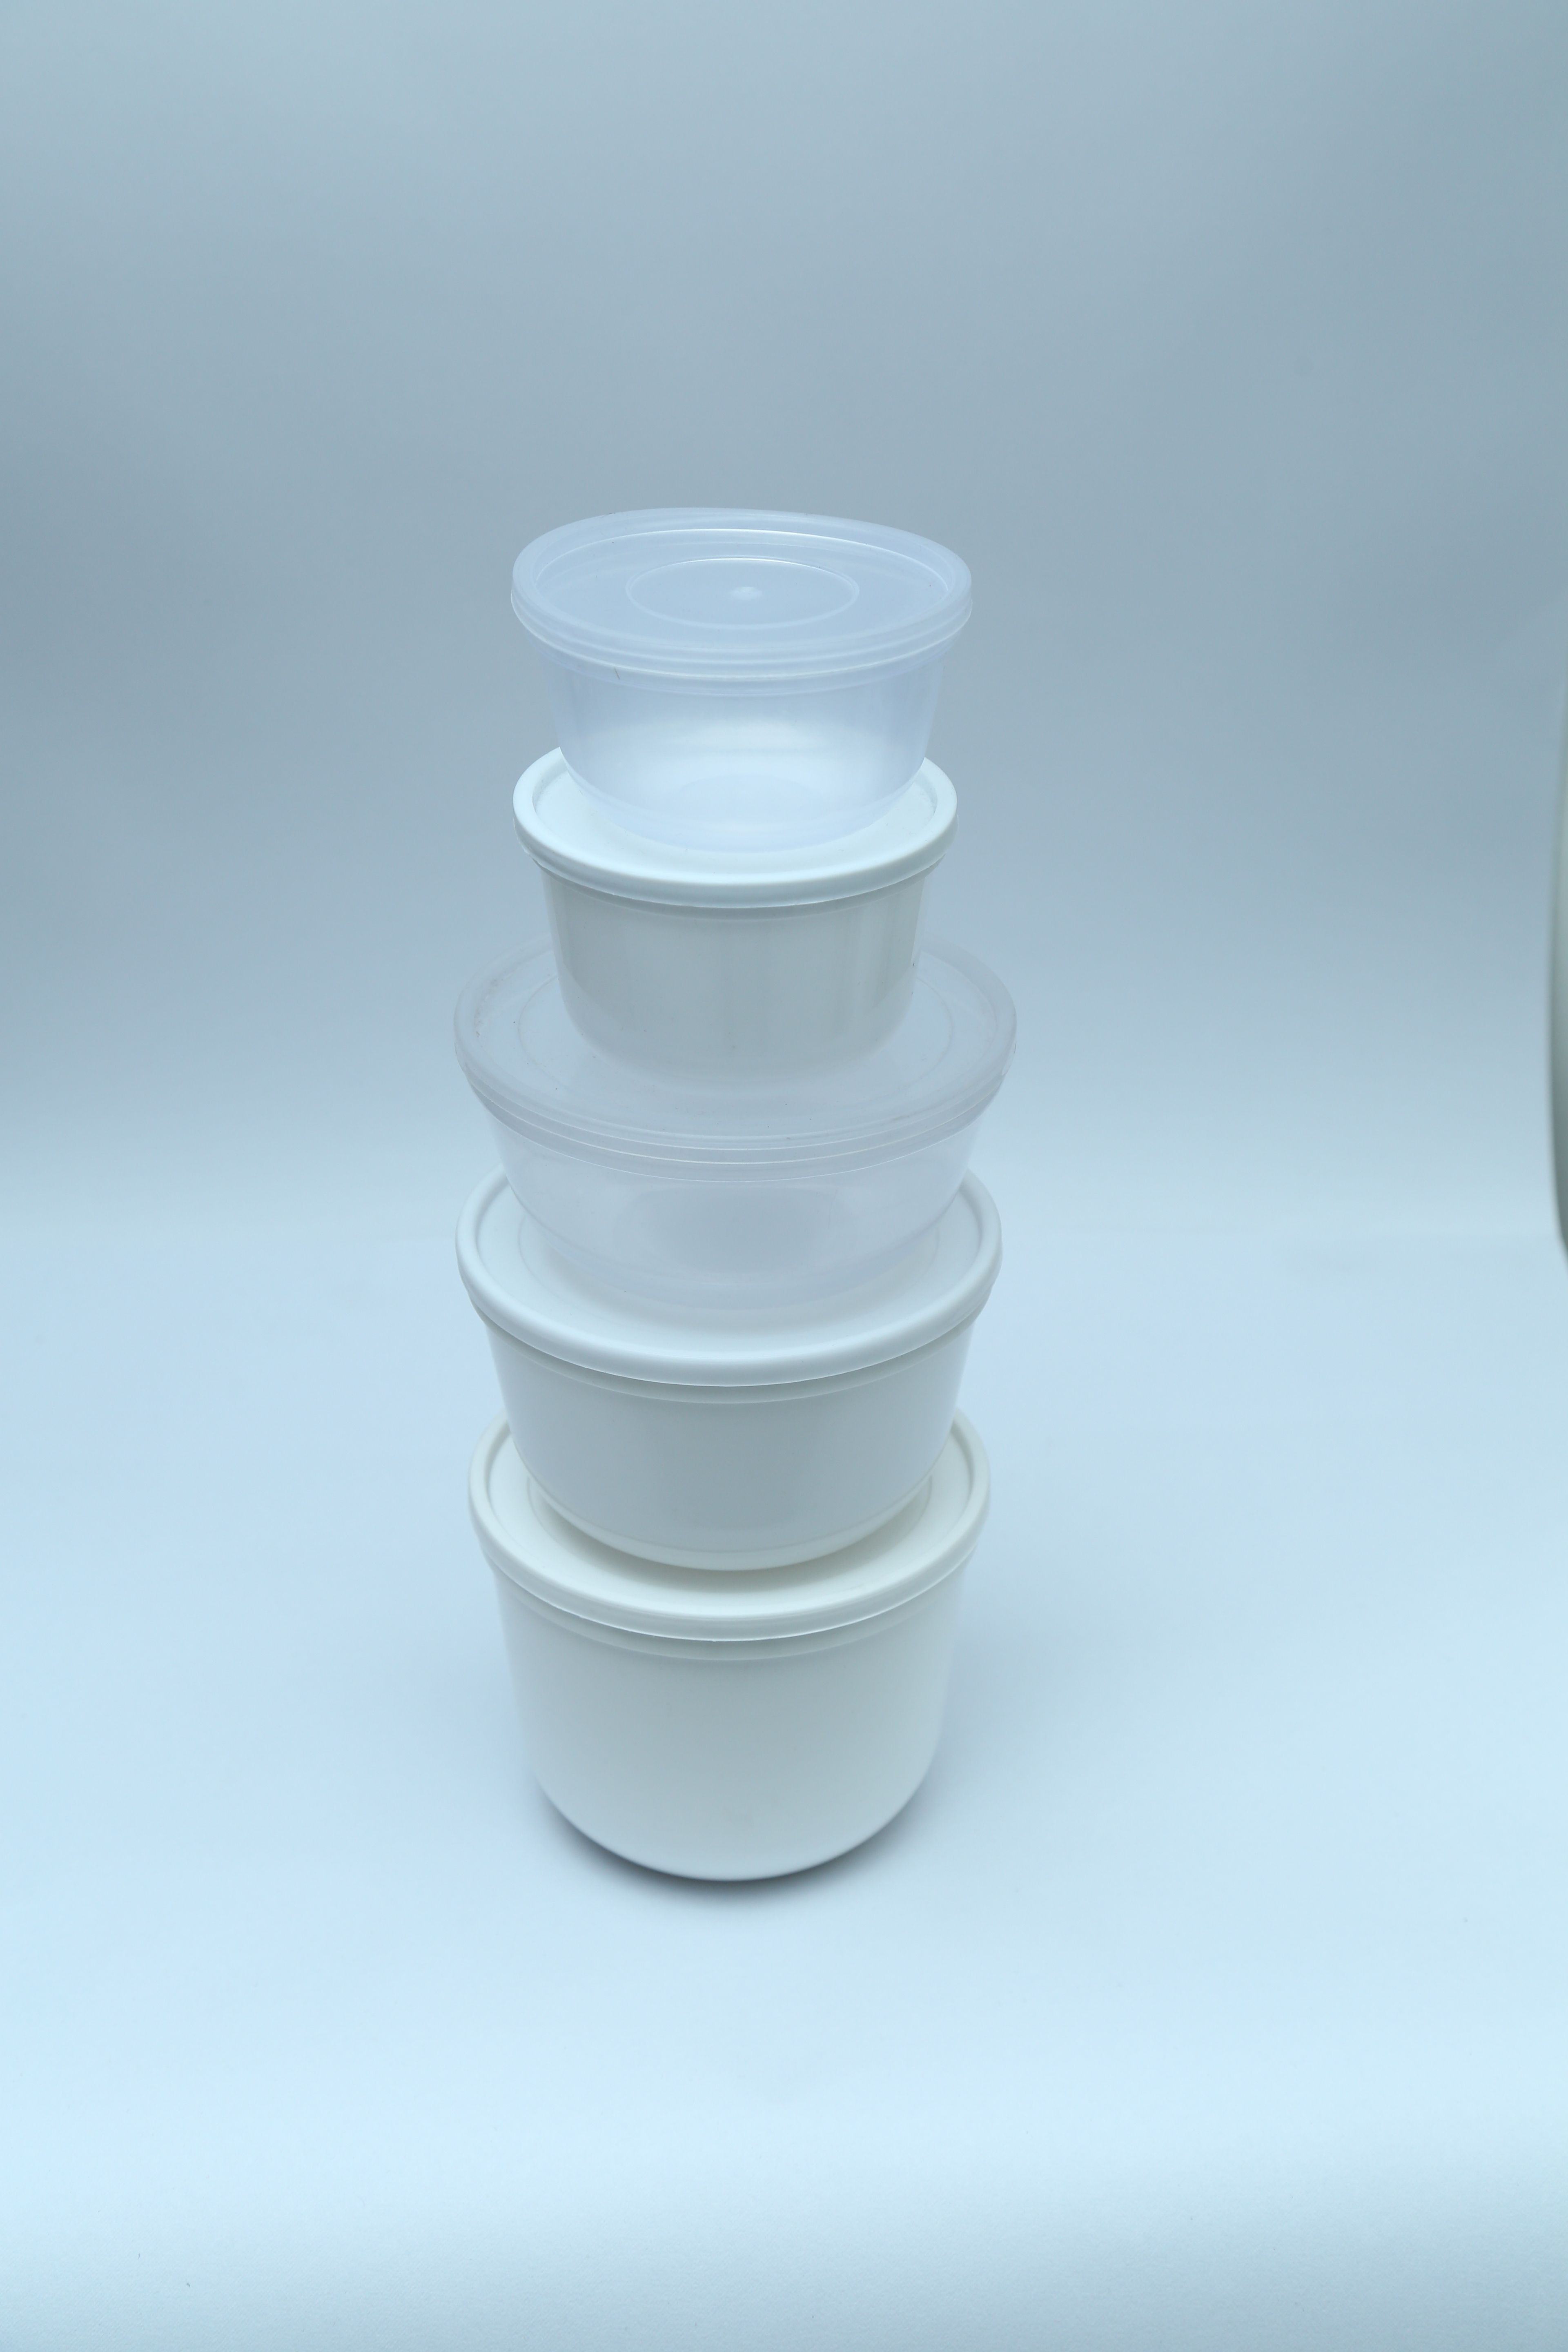 Bowl Type Plastic Container